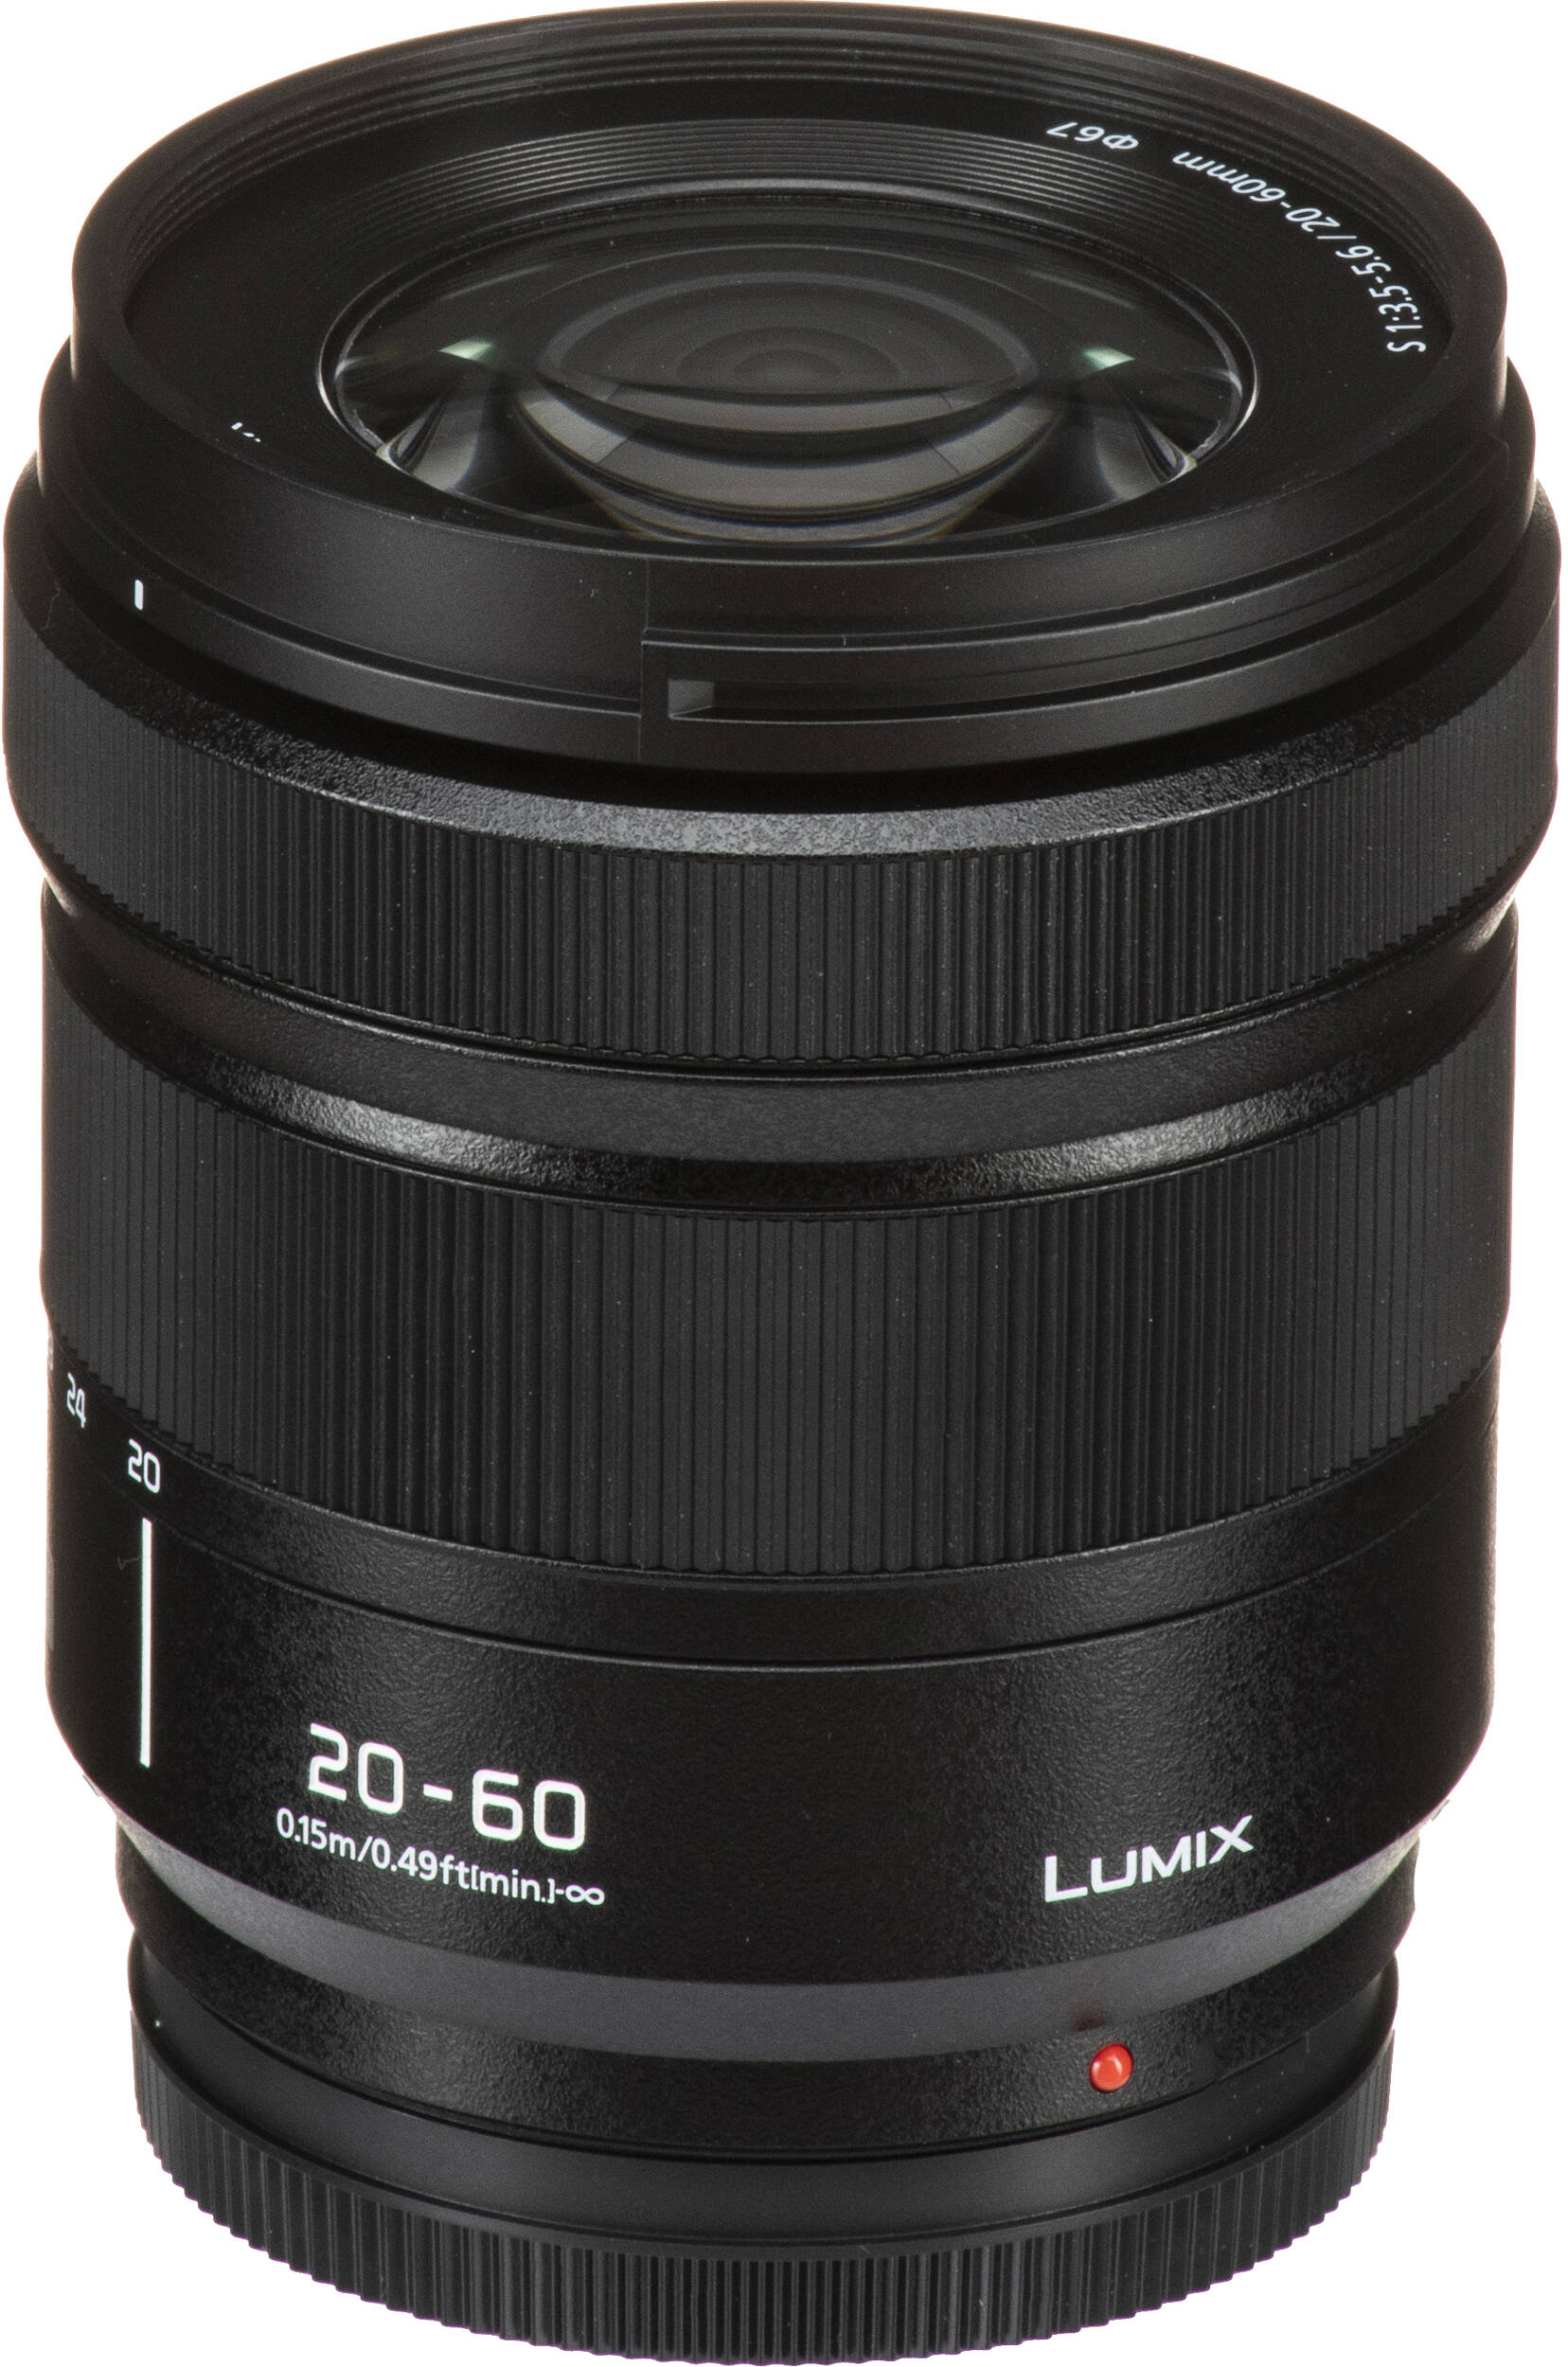 Фотоапарат Panasonic Lumix DC-S9 + 20-60mm f/3.5-5.6 Dark Olive (DC-S9KE-G)фото21